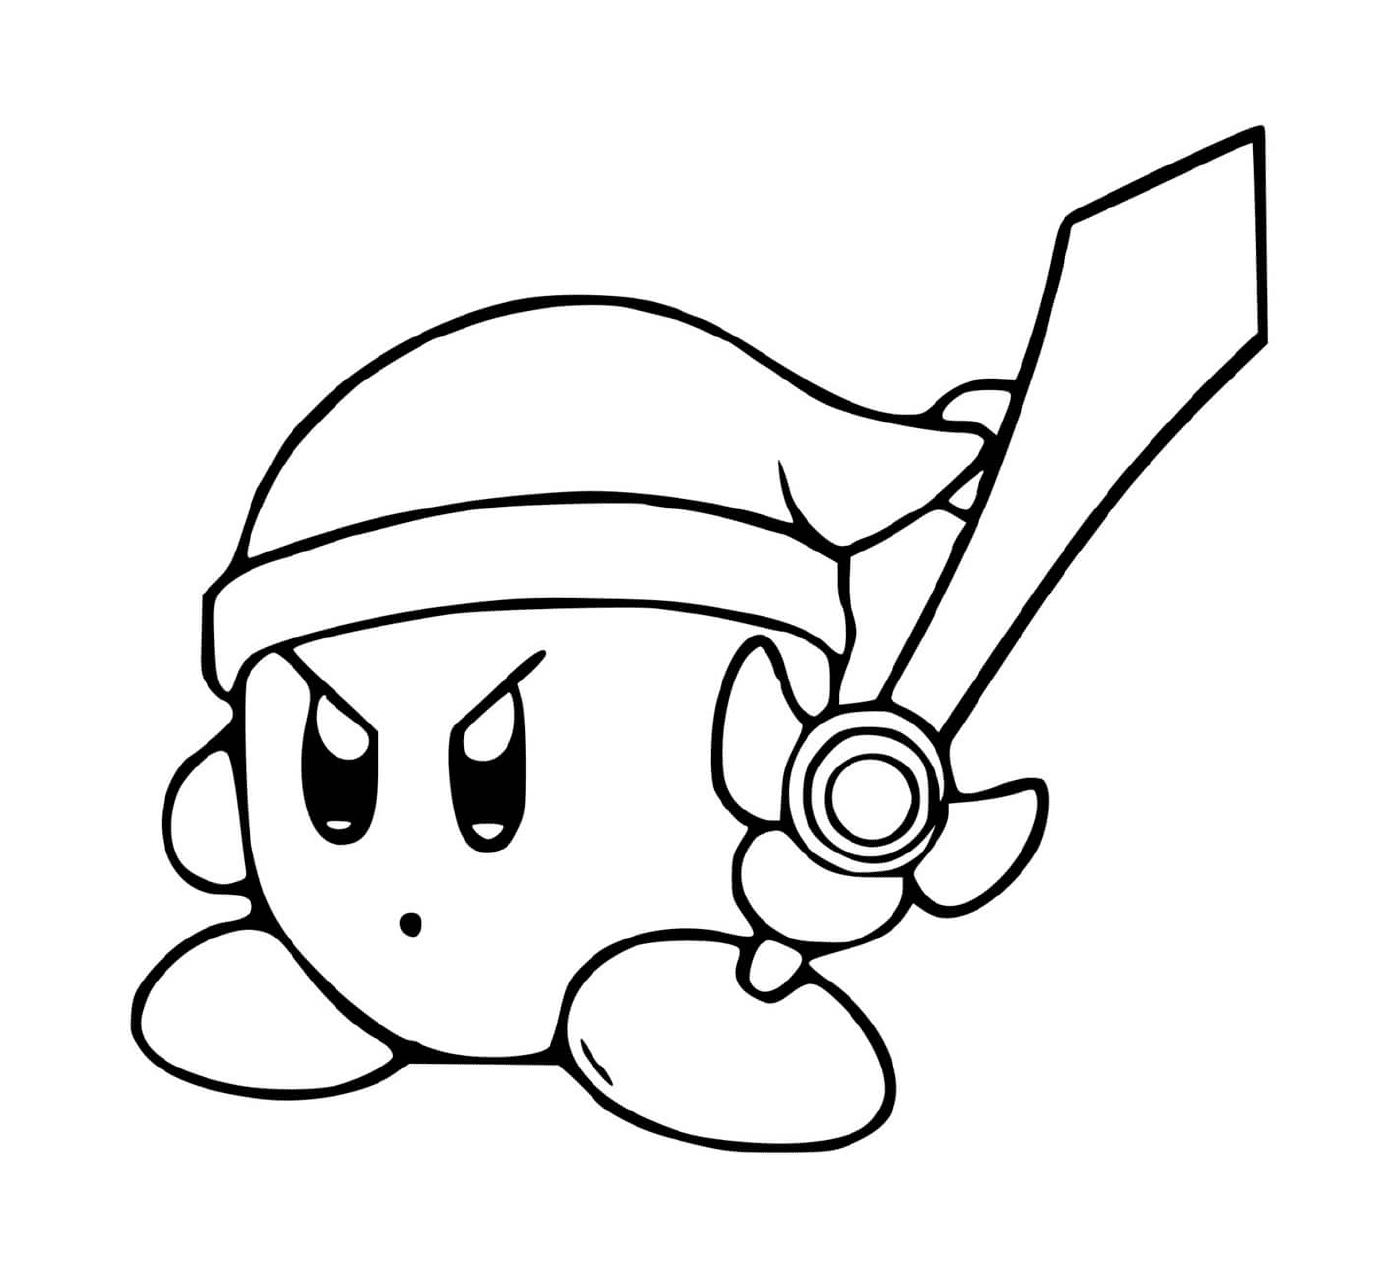  Kirby im Zelda-Modus mit Schwert 